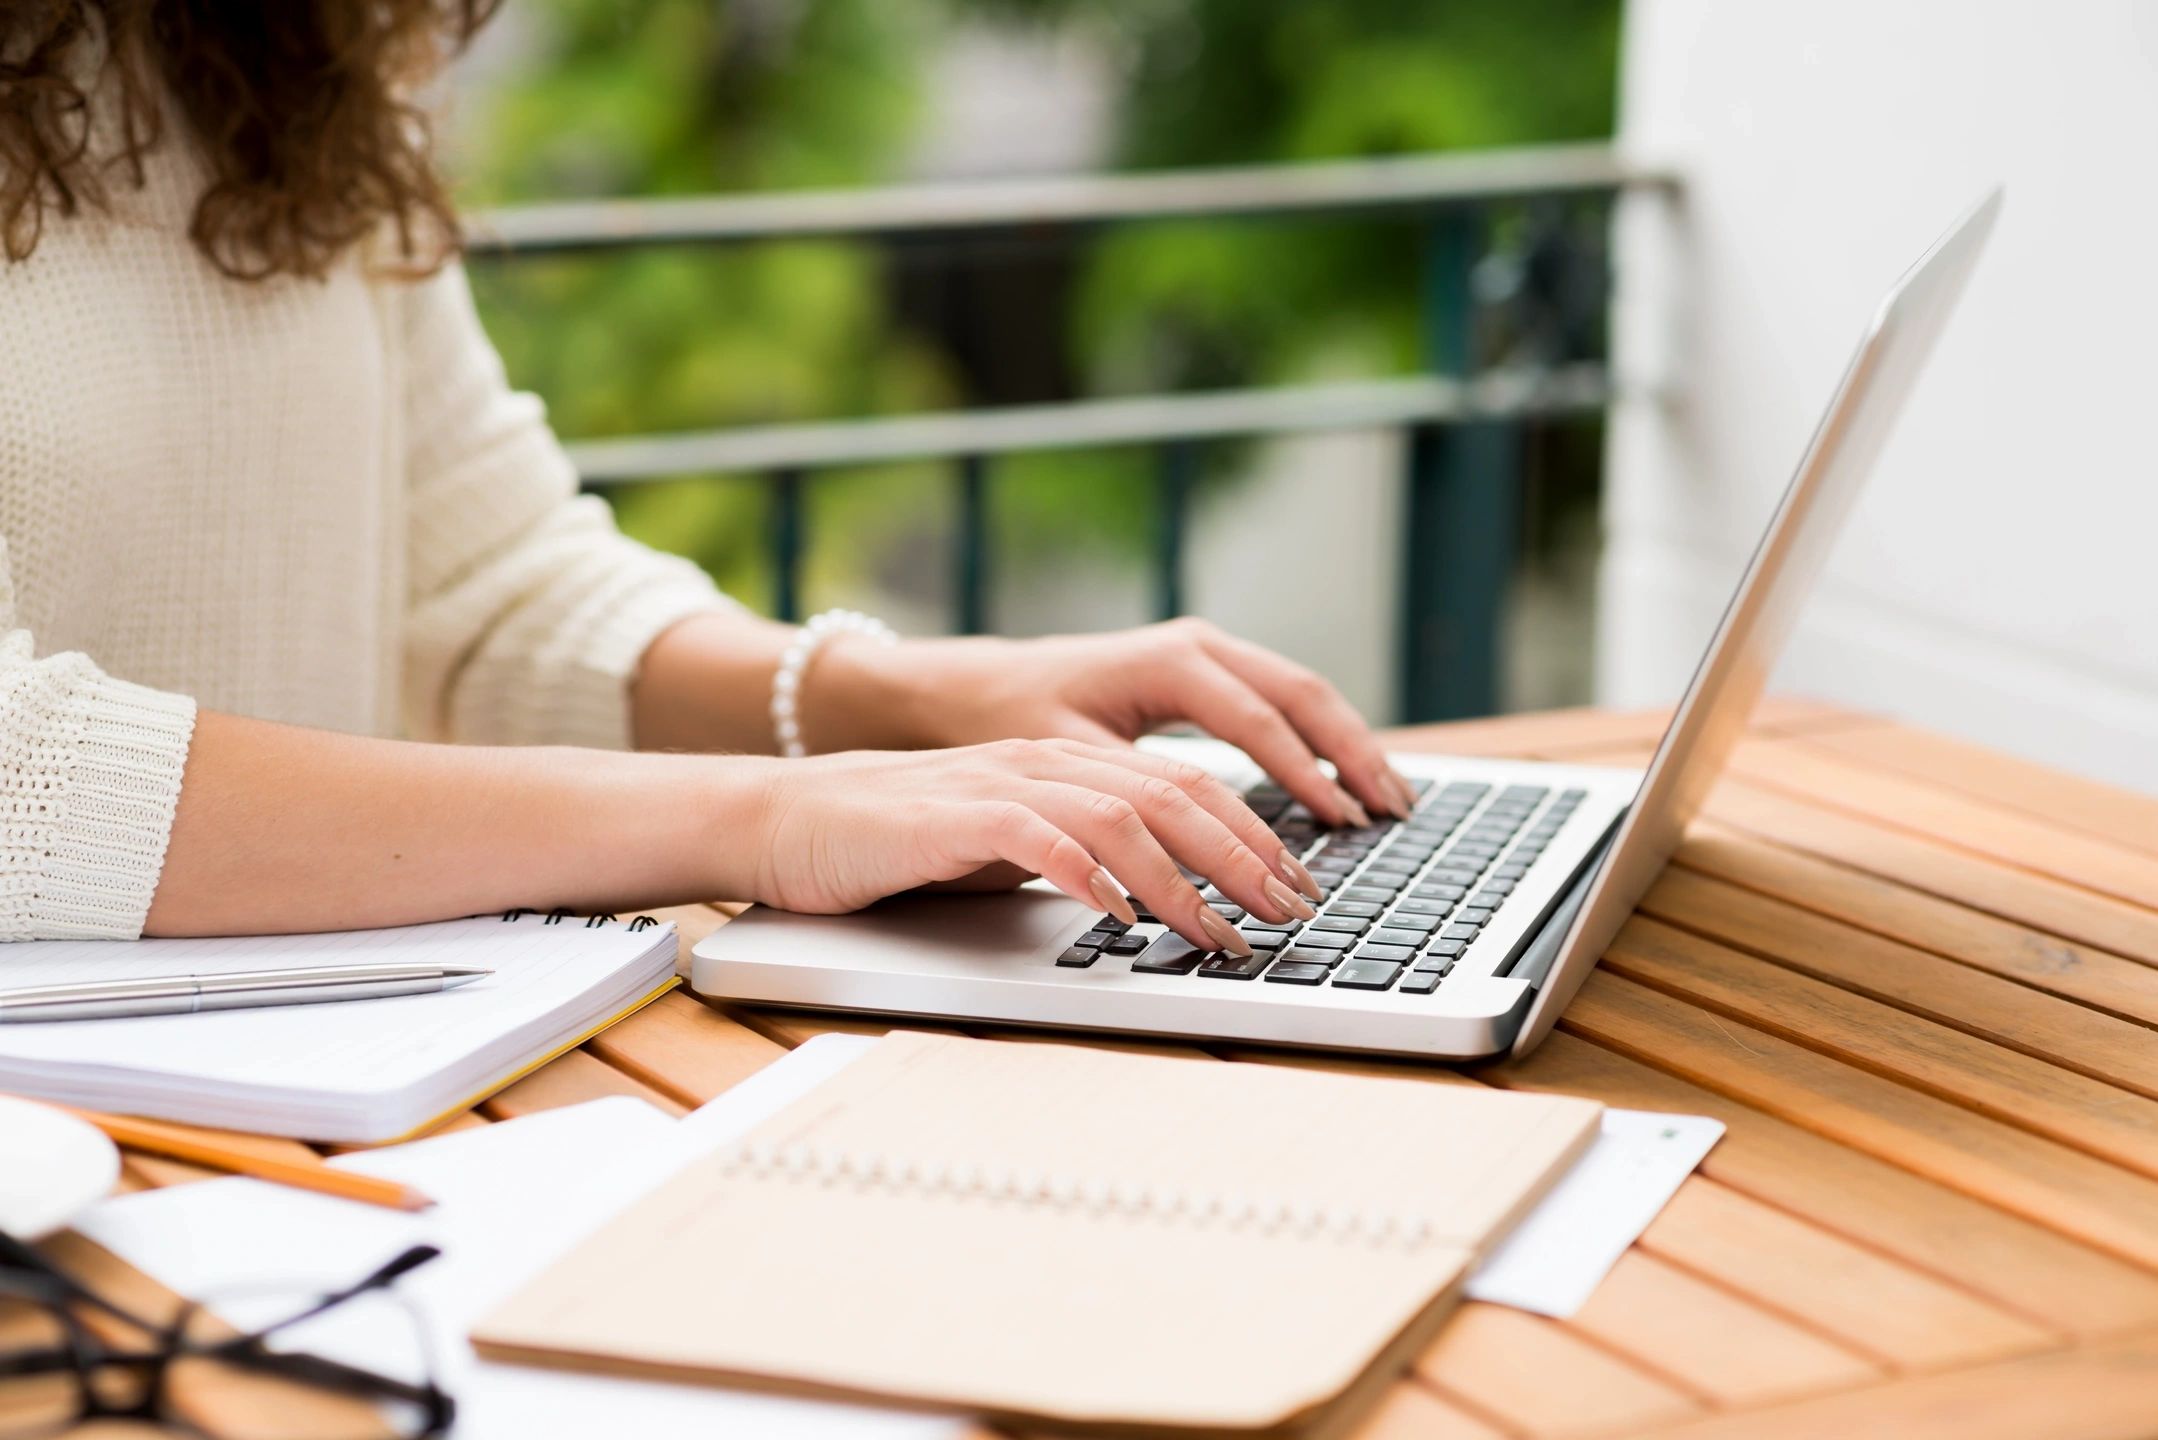 Woman sitting at desk typing on laptop keyboard.